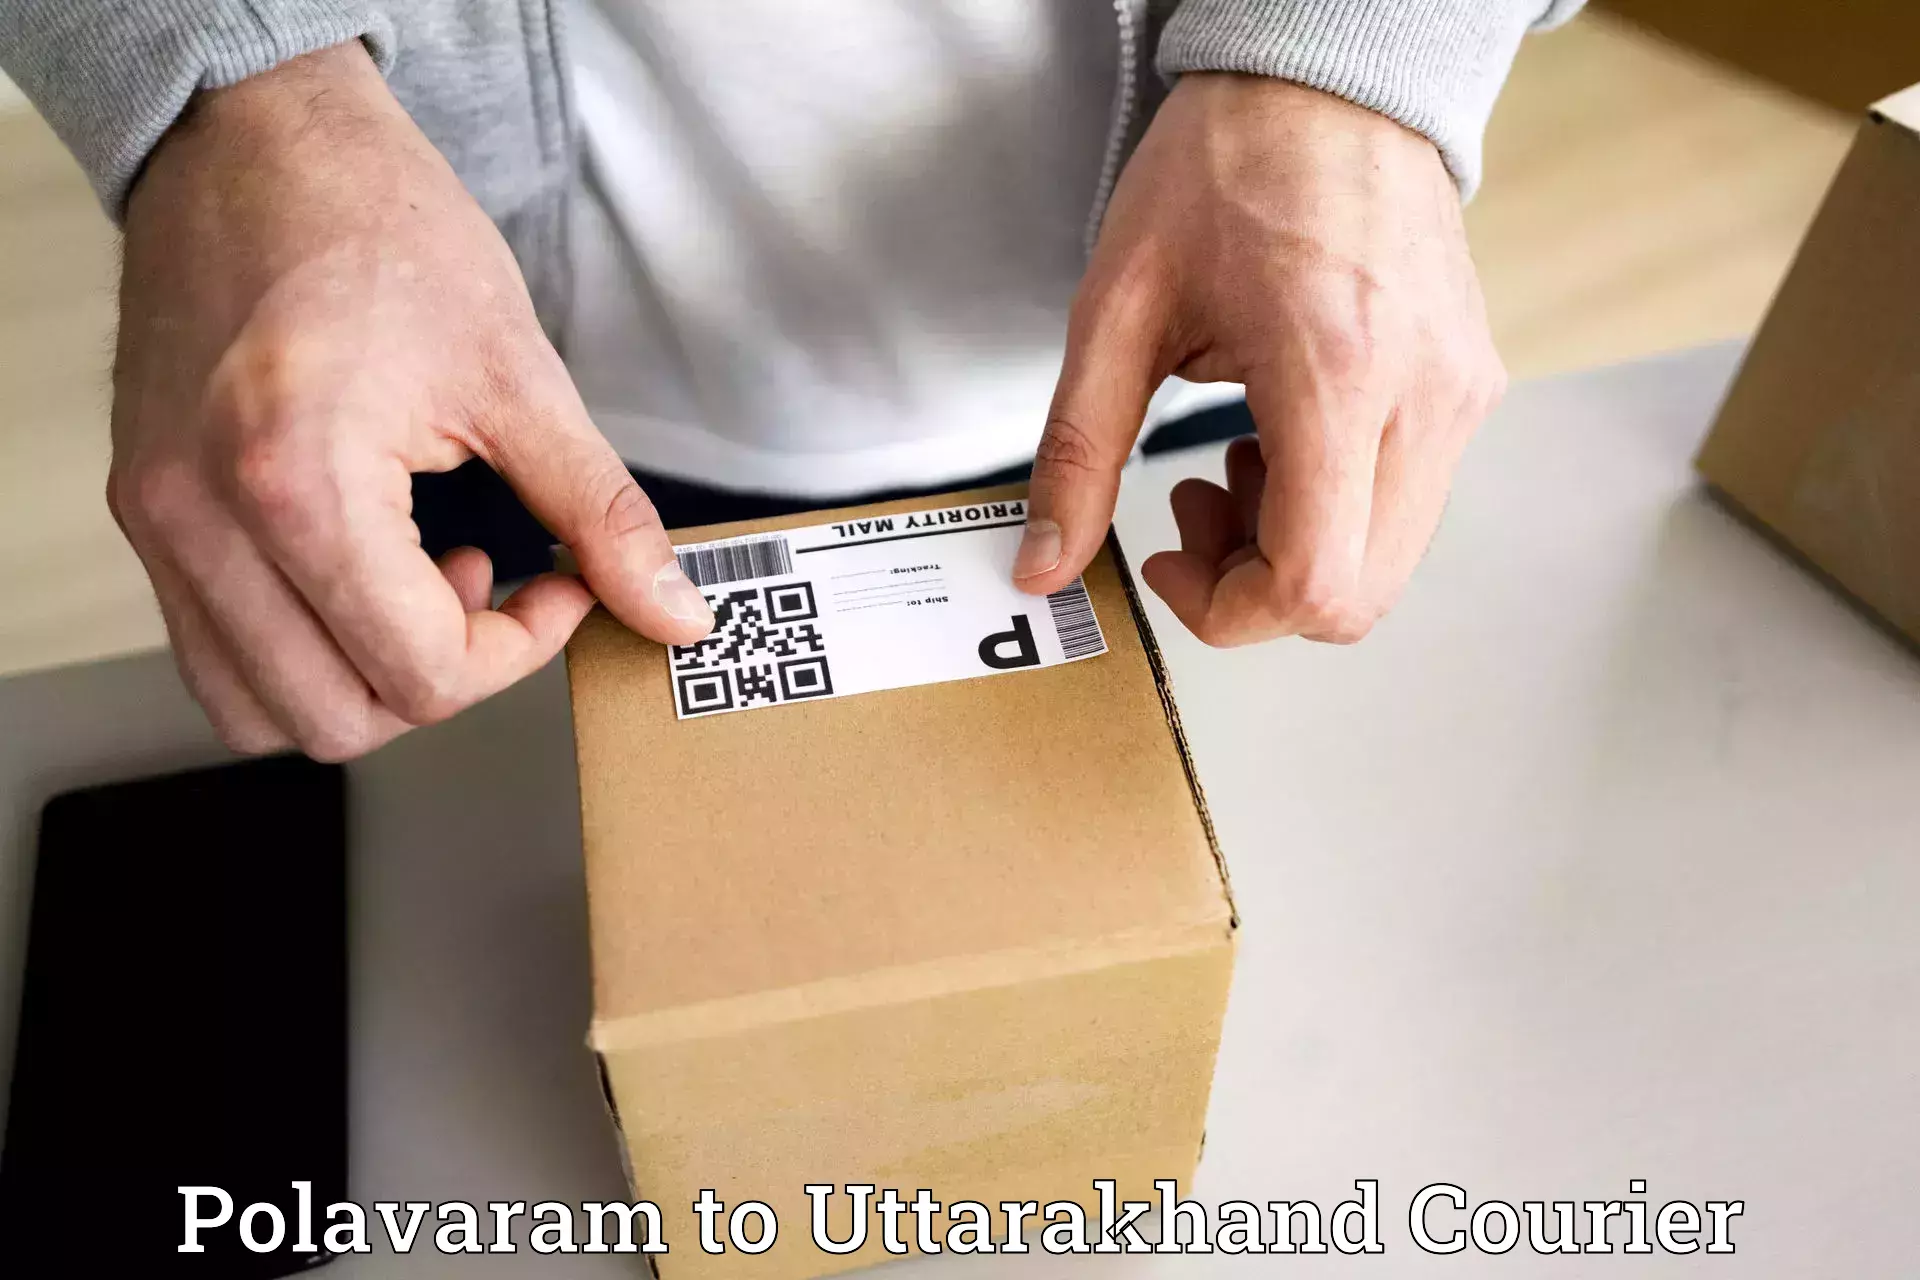 Budget-friendly shipping Polavaram to Gopeshwar